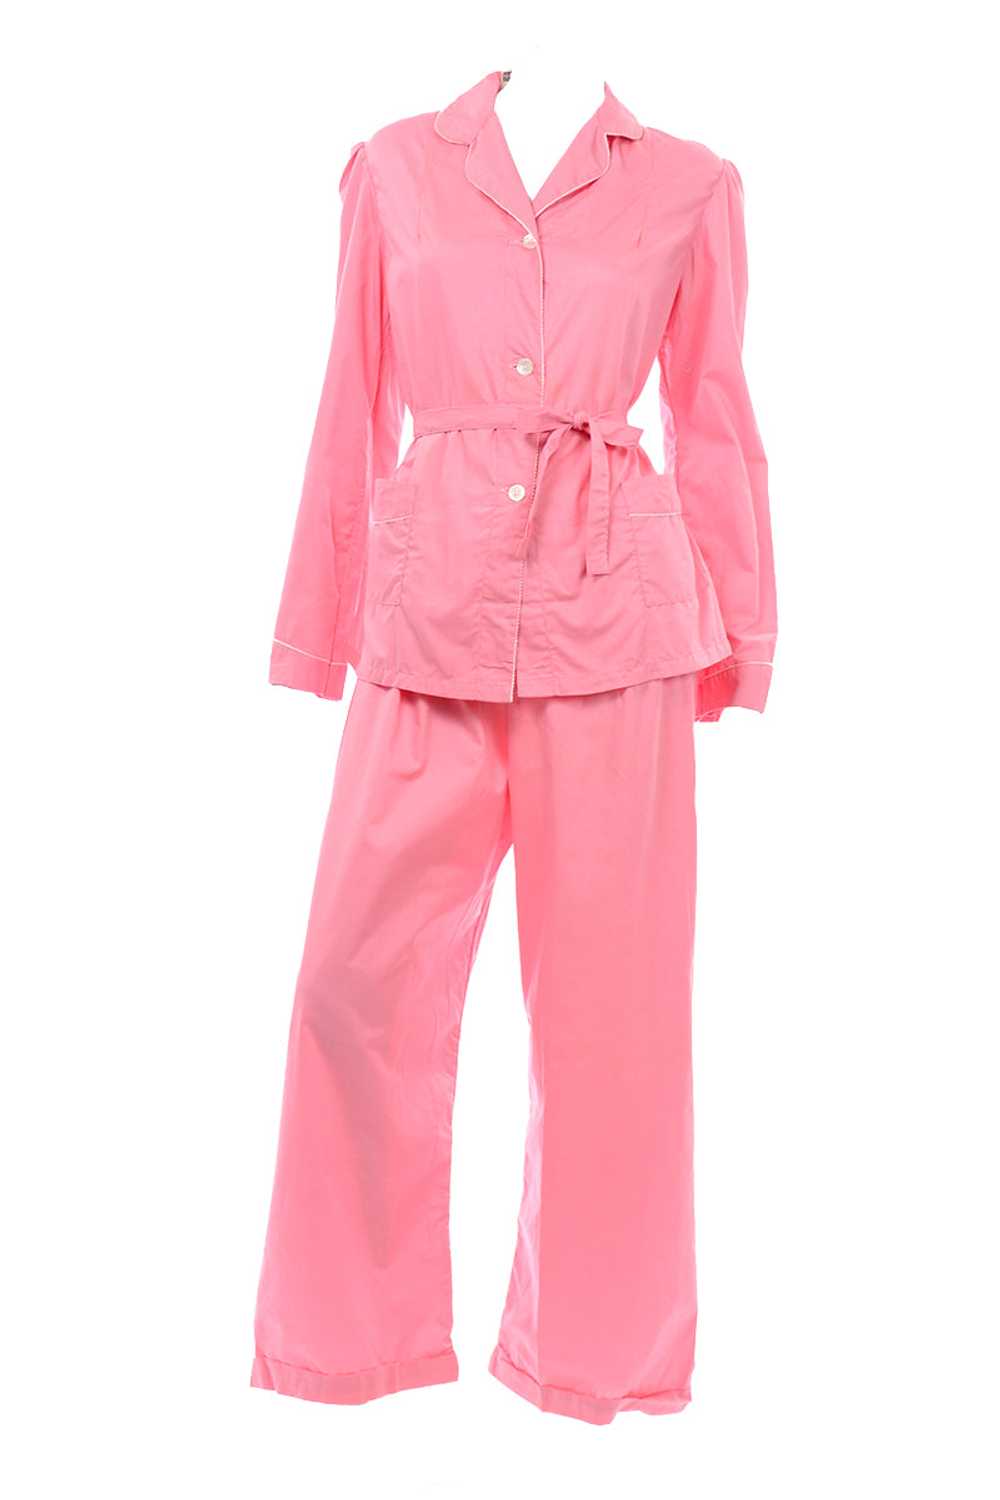 1970s Pink Cotton Vintage Pajama Set Deadstock fr… - image 1